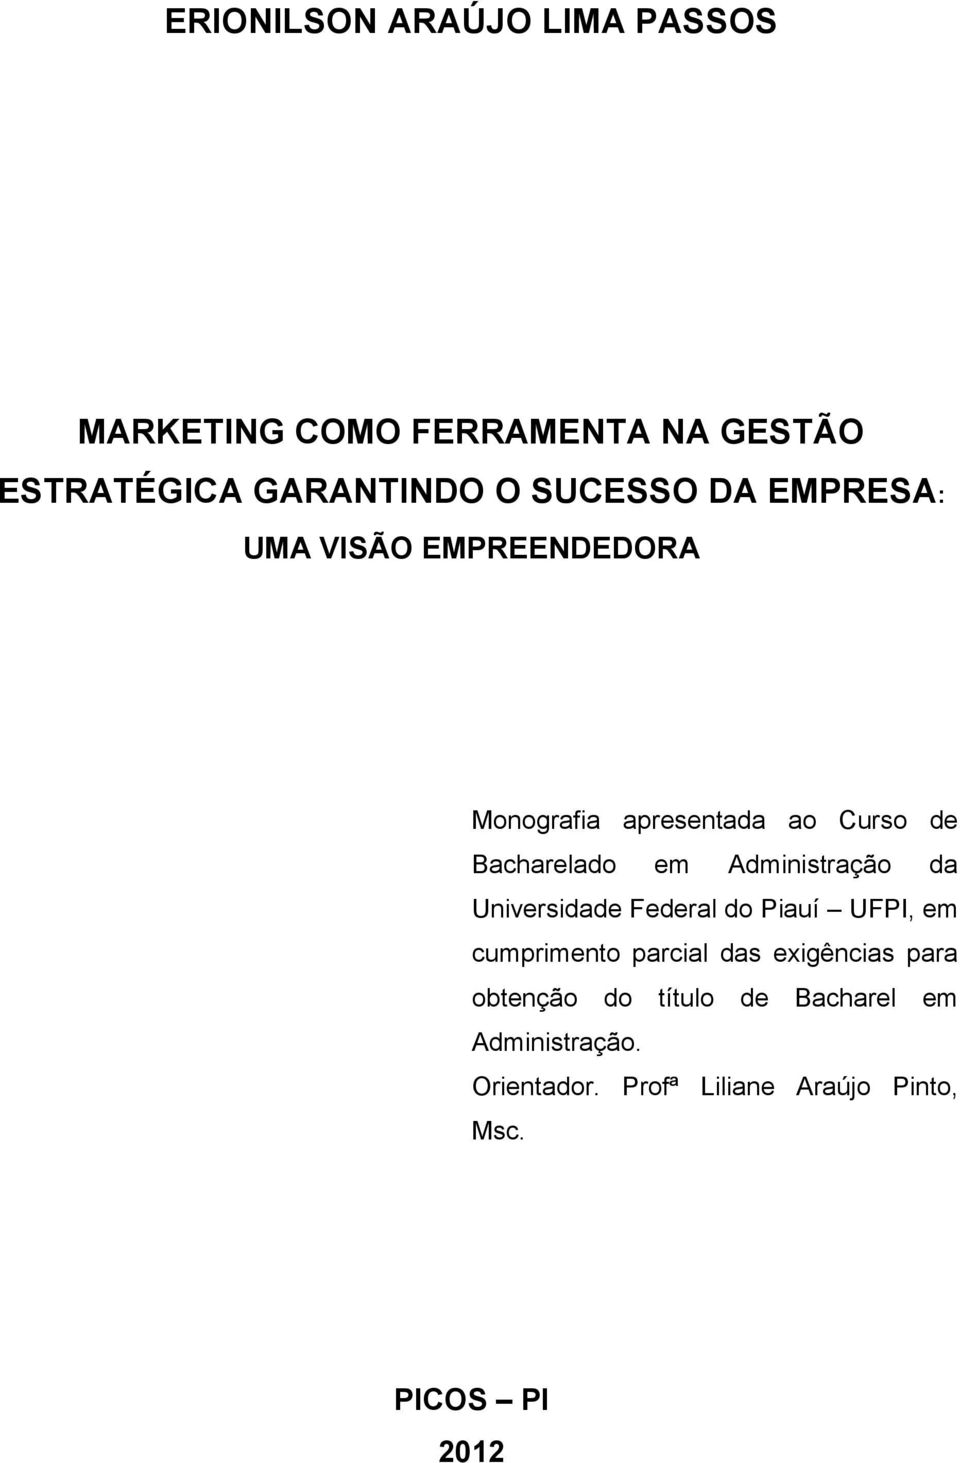 Administração da Universidade Federal do Piauí UFPI, em cumprimento parcial das exigências para